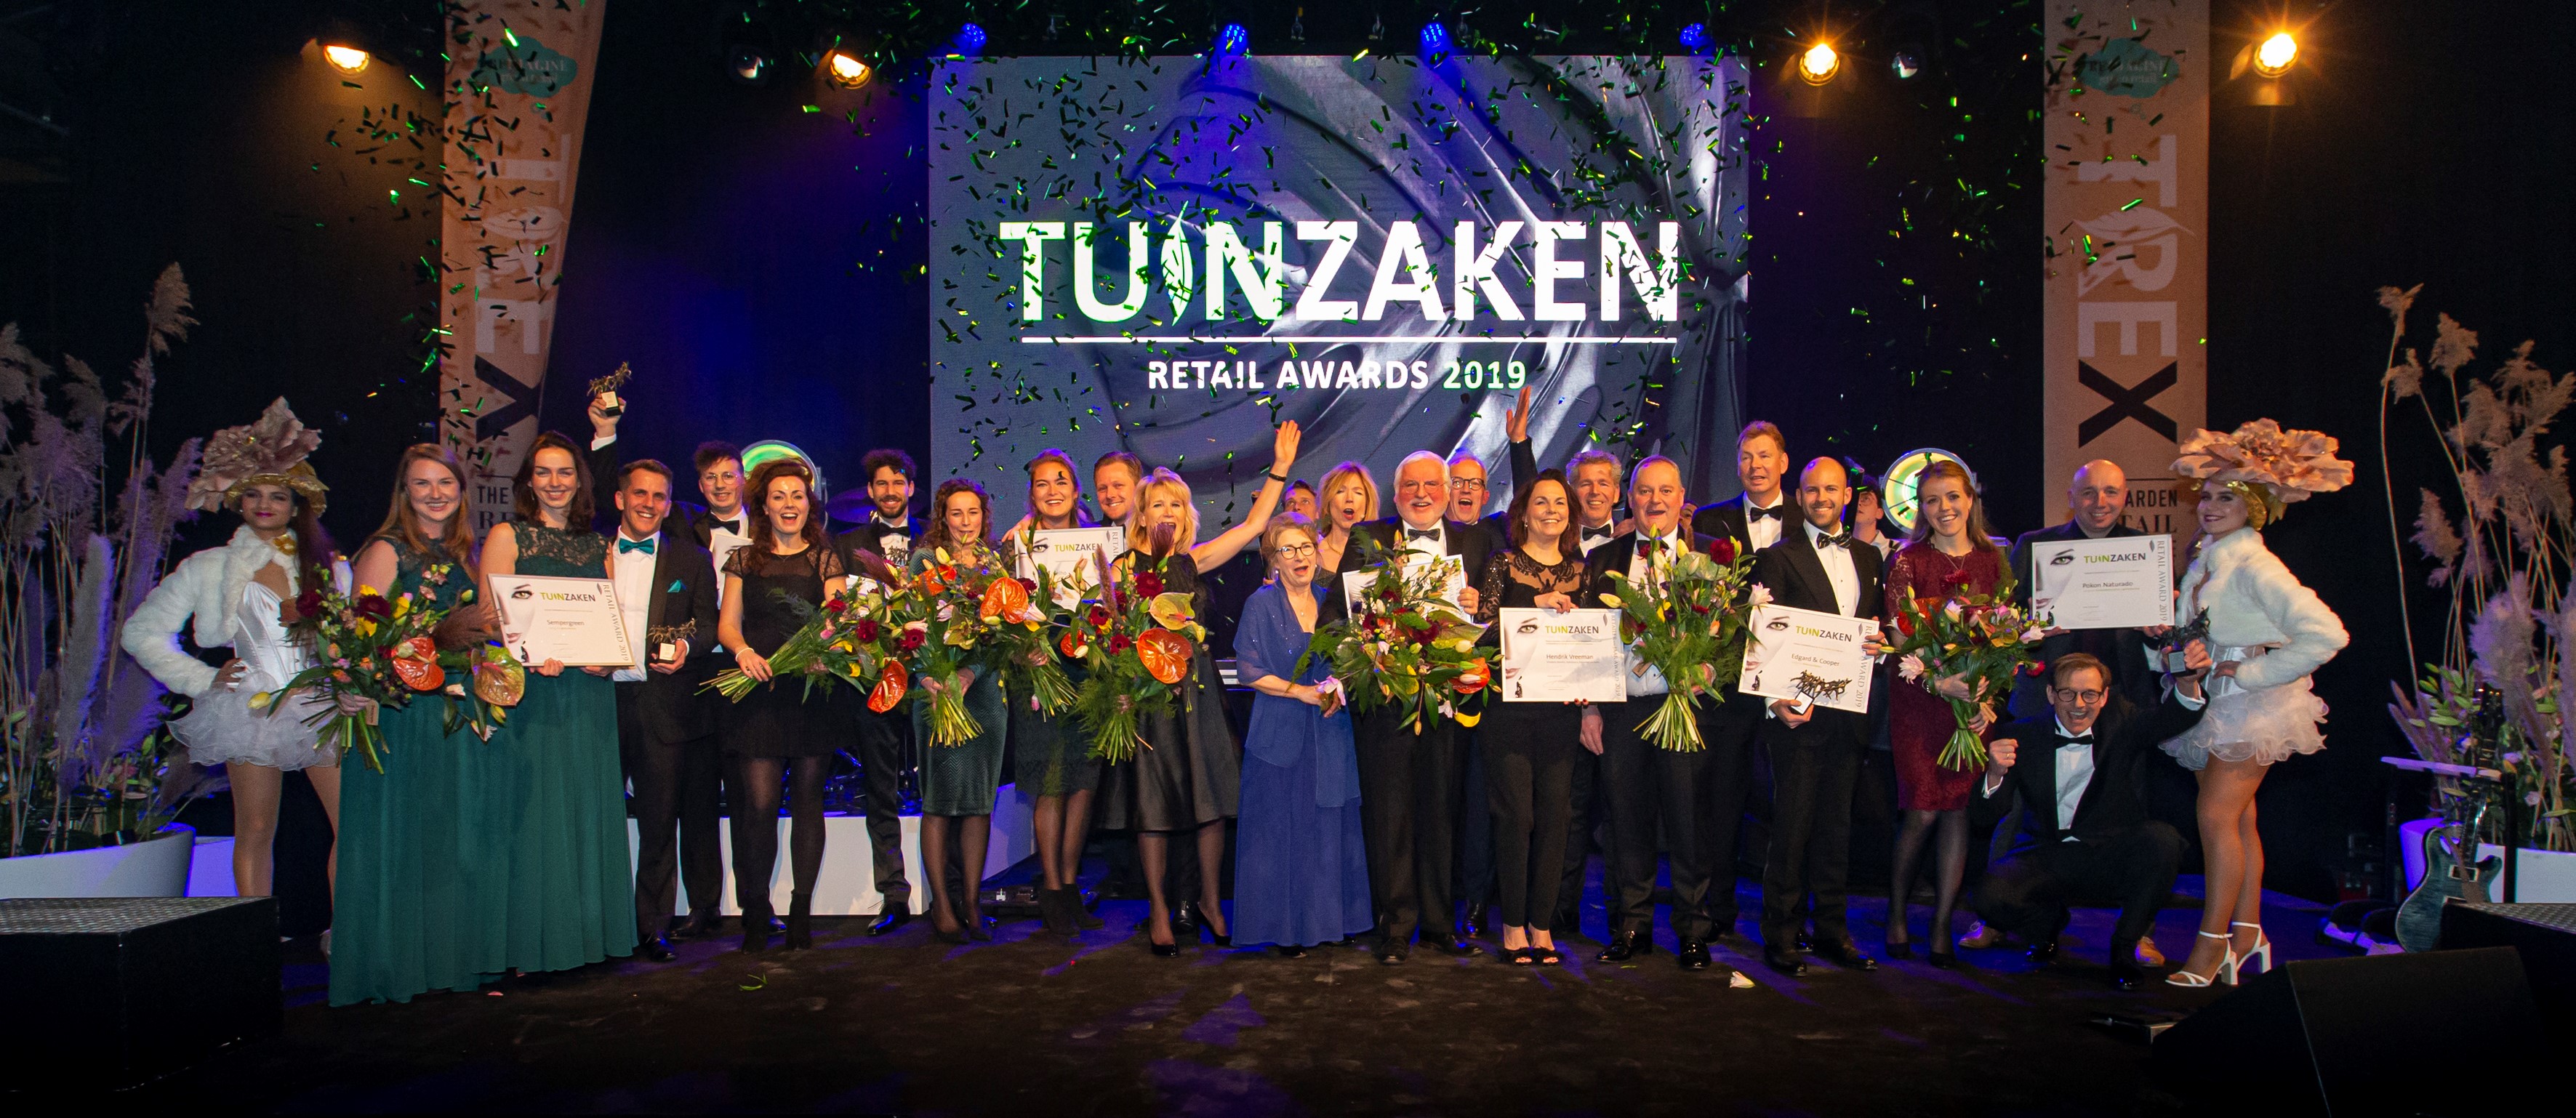 Winnaars van de TuinZaken Retail Awards